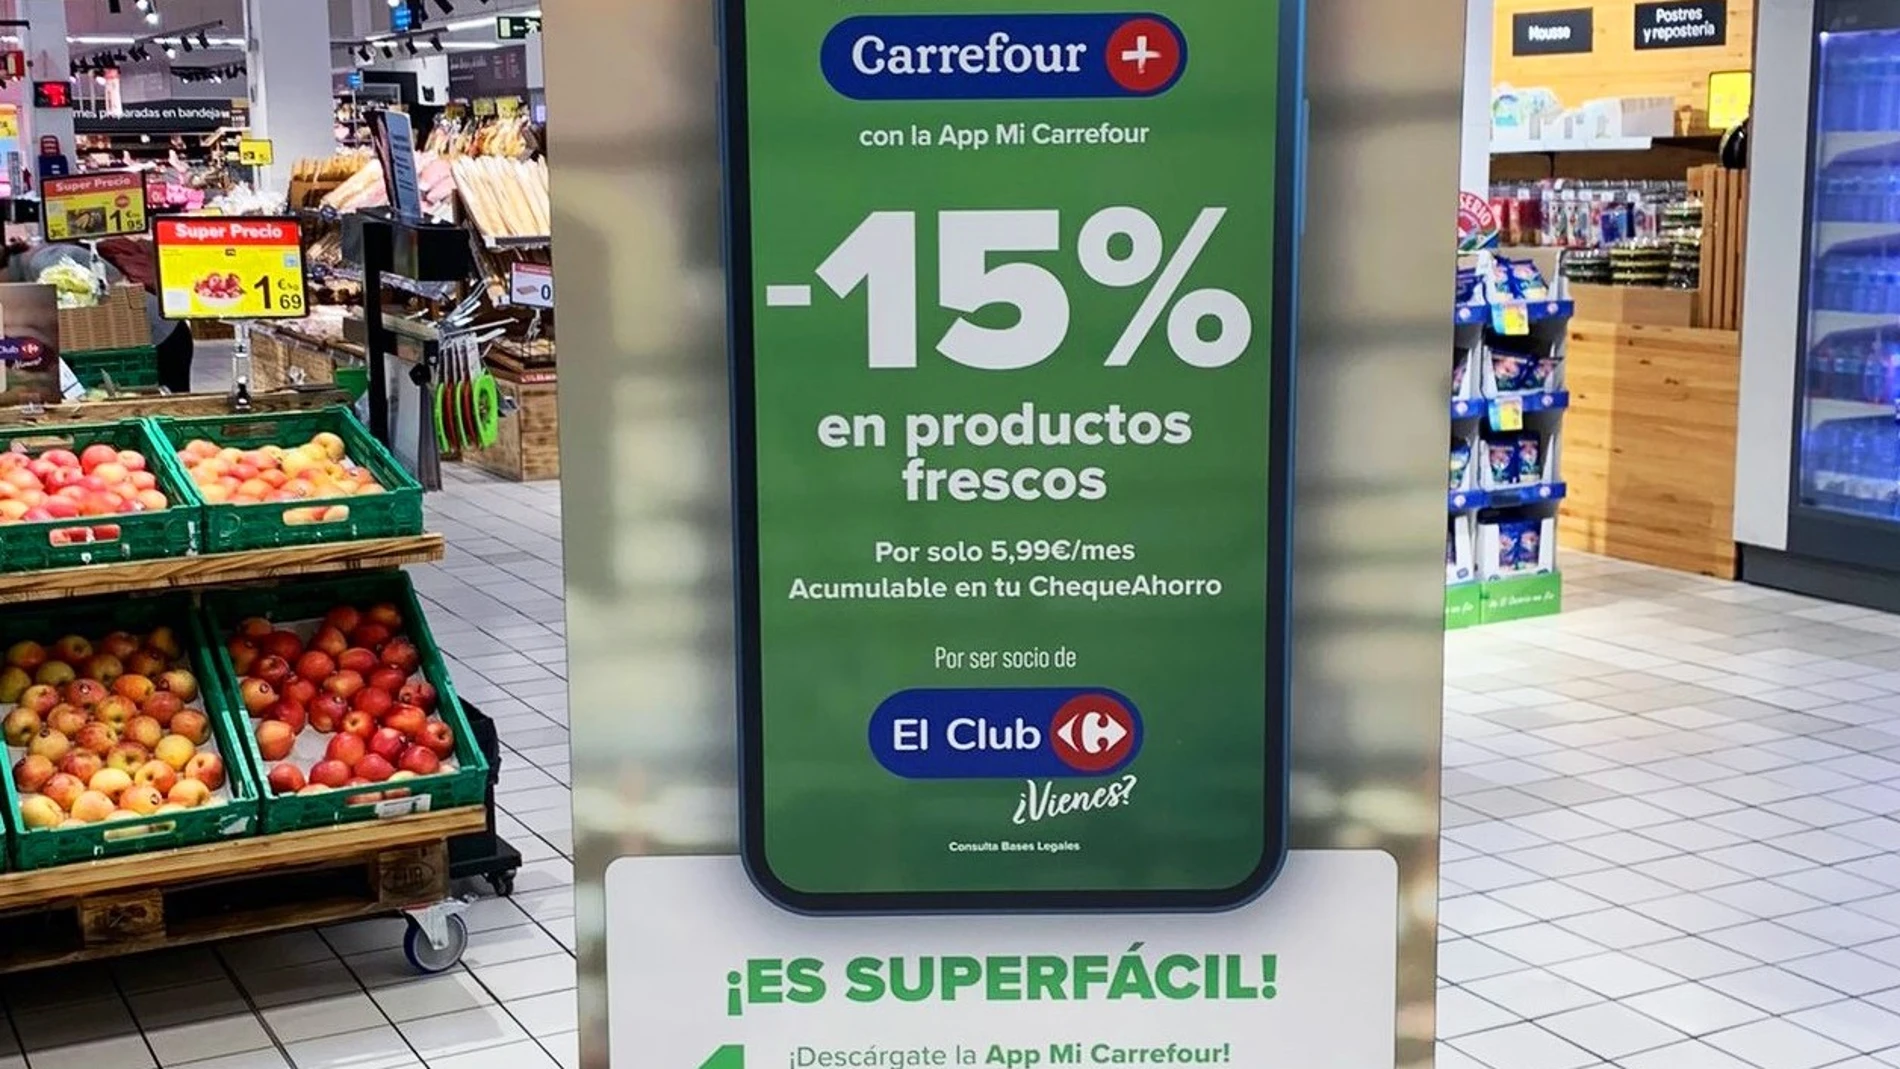 Cartel promocional de los descuentos de un 15% en frescos de Carrefour